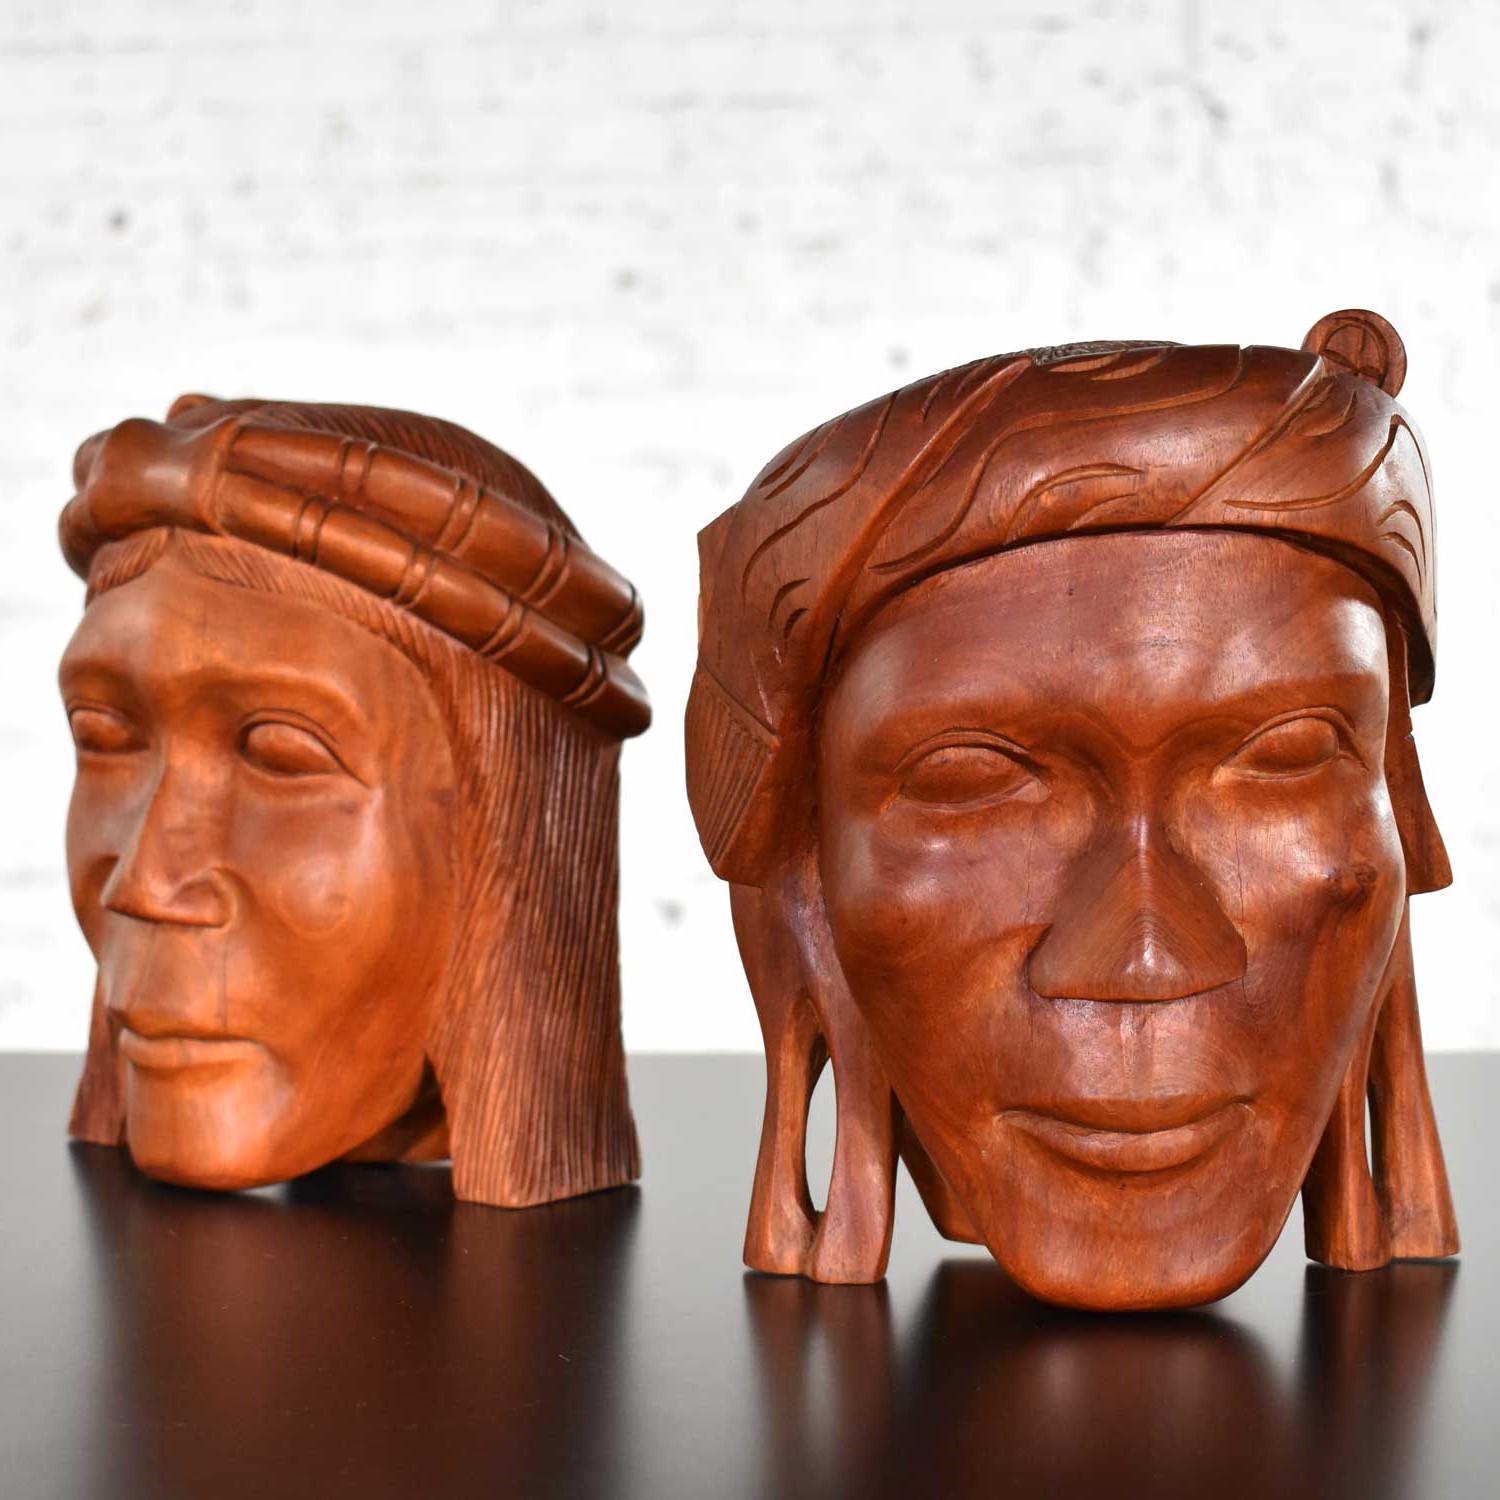 Belle paire de serre-livres en bois sculpté de style tribal. Ils sont dans un état vintage impressionnant. Veuillez voir les photos, vers le milieu du 20e siècle.

Si vous êtes à la recherche de serre-livres uniques pour accueillir votre